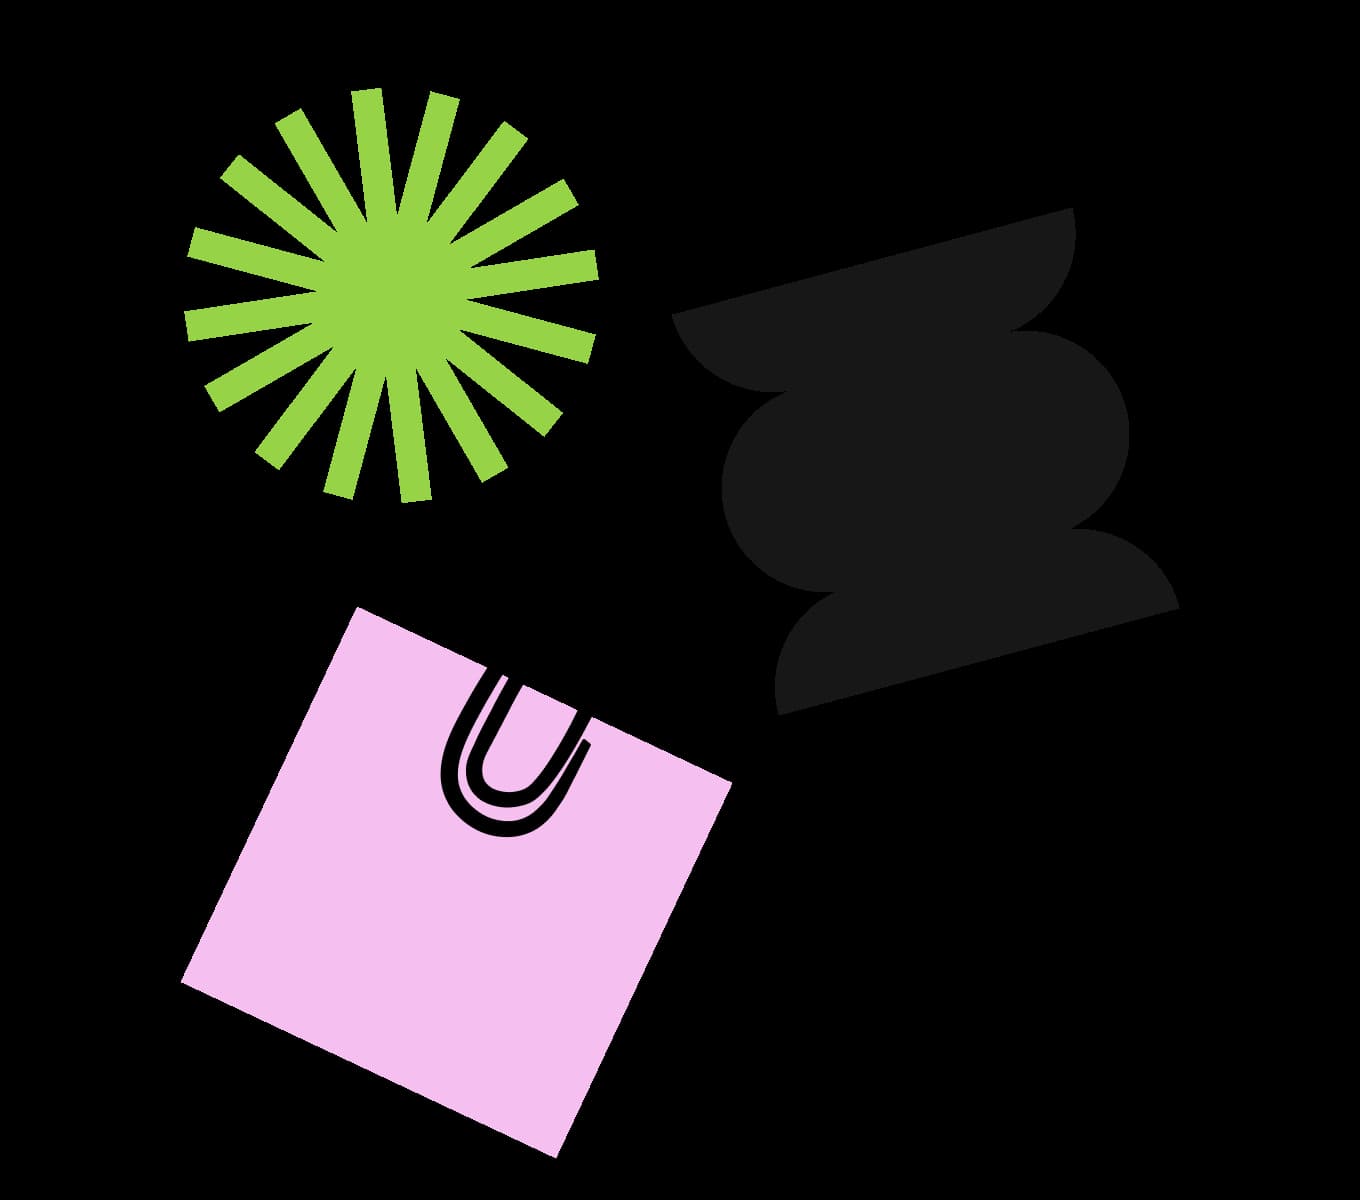 A UI rappresentation of clipper